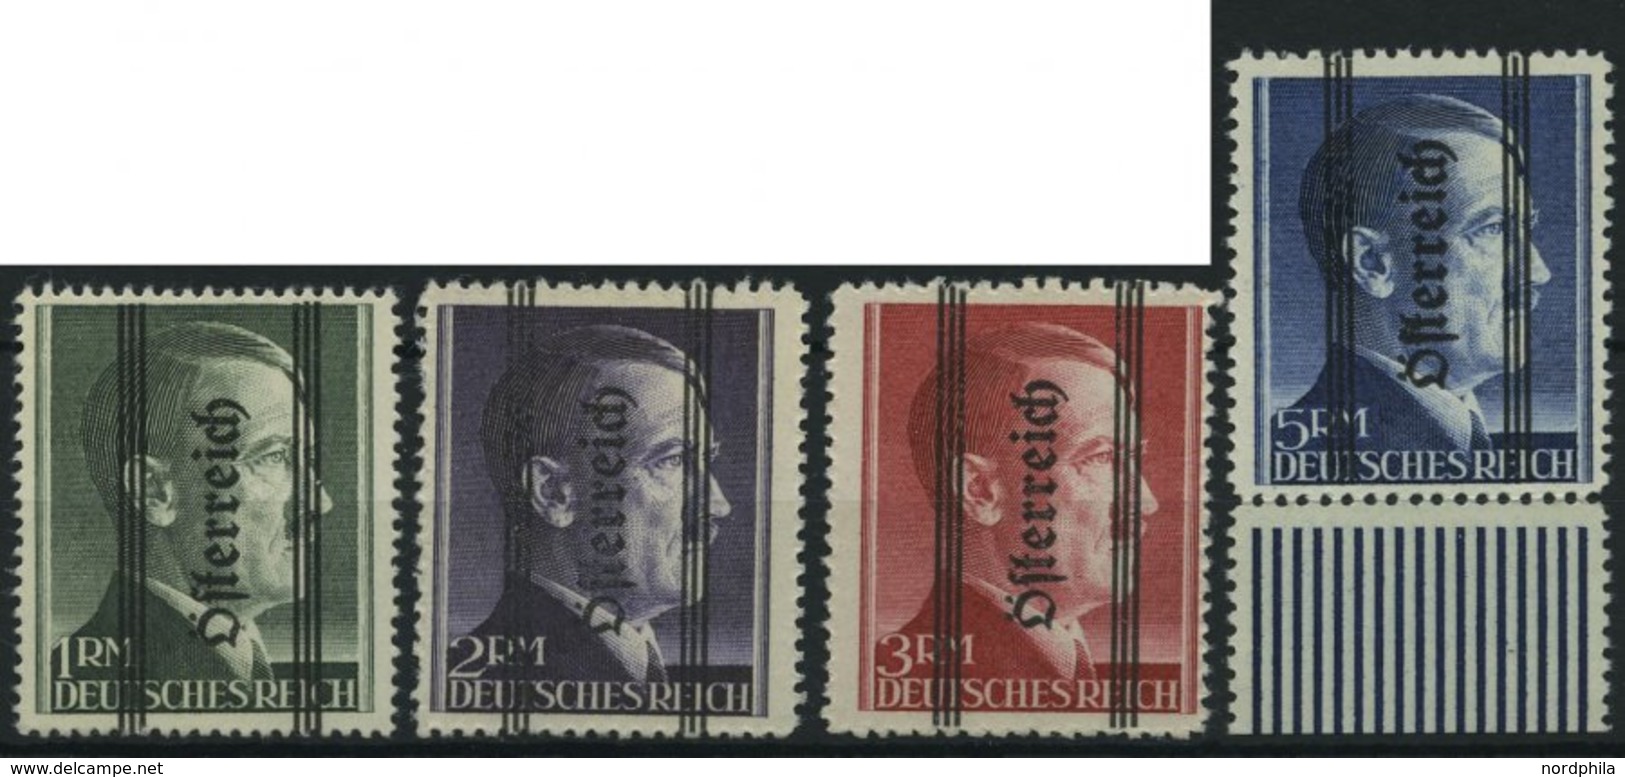 ÖSTERREICH 693-96I **, 1945, 1 - 5 RM Grazer Aufdruck, Type I, Prachtsatz, Fotoattest Kovar, Mi. 800.- - Used Stamps